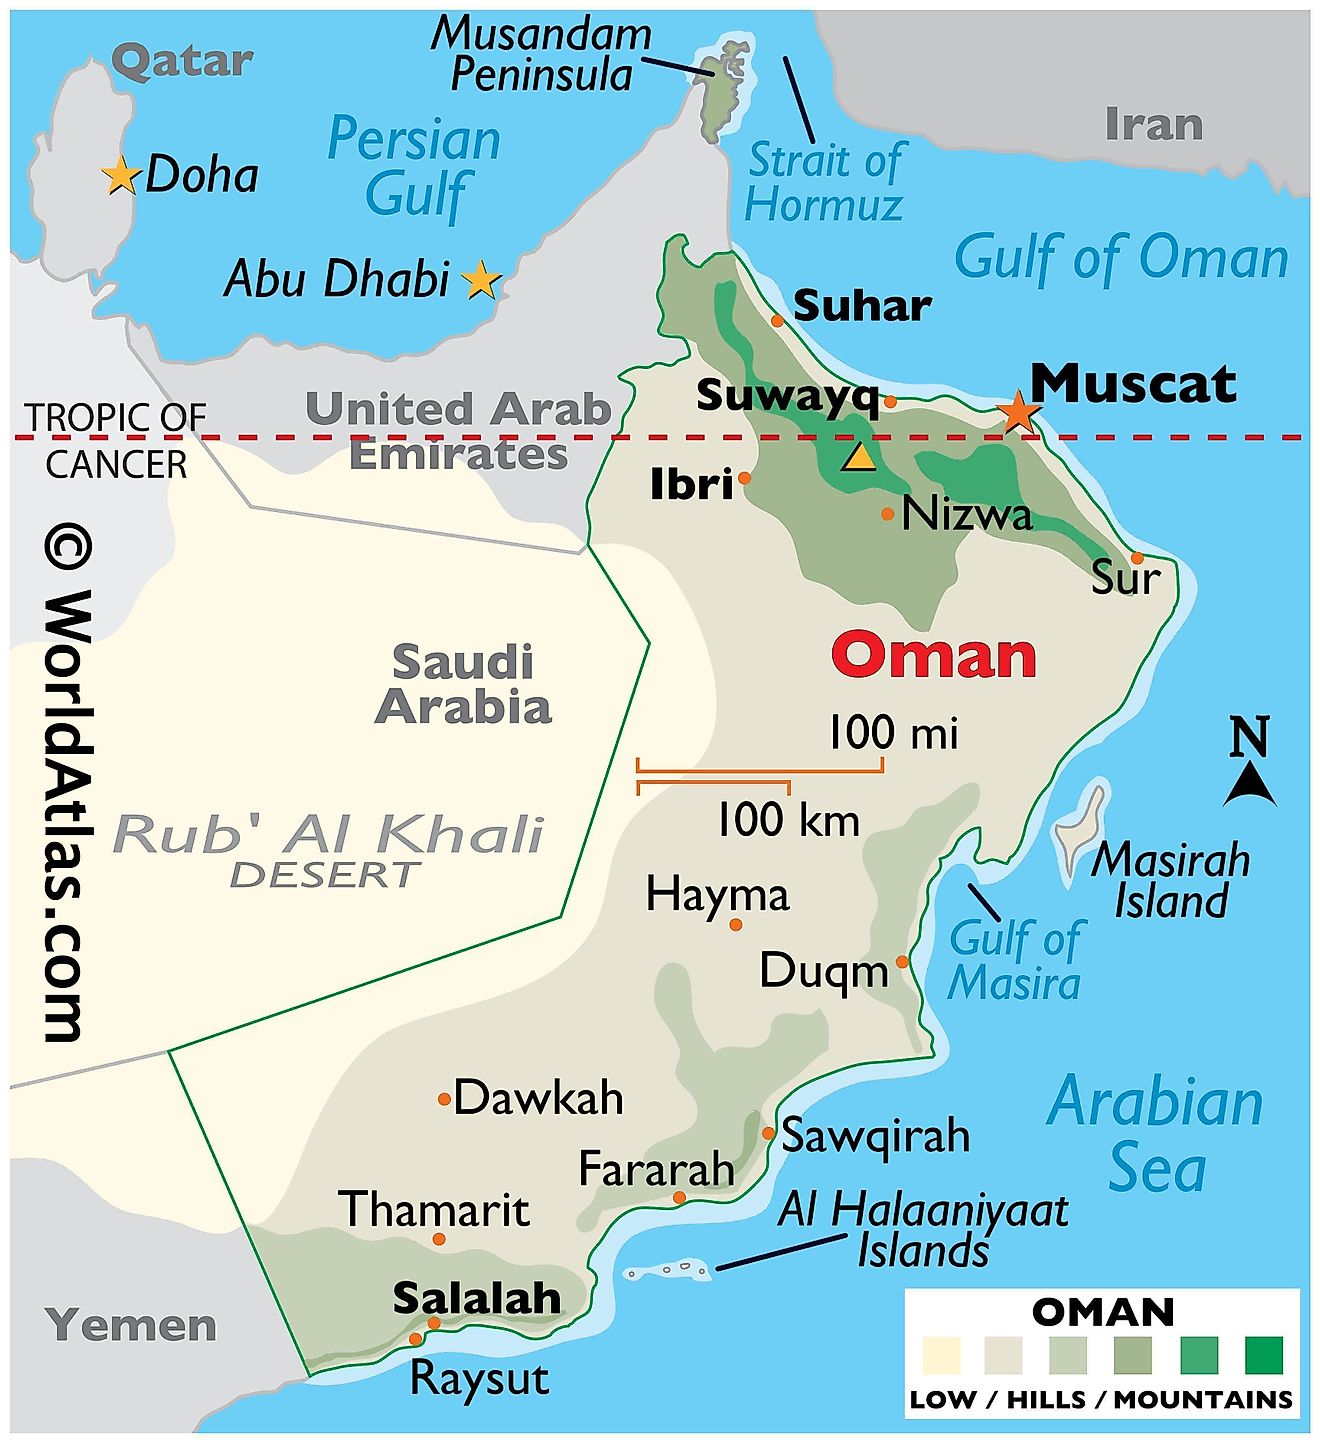 Mapa físico de Omán que muestra los límites estatales, el relieve, el punto más alto, las ciudades importantes, la península de Musandam, las islas, etc.